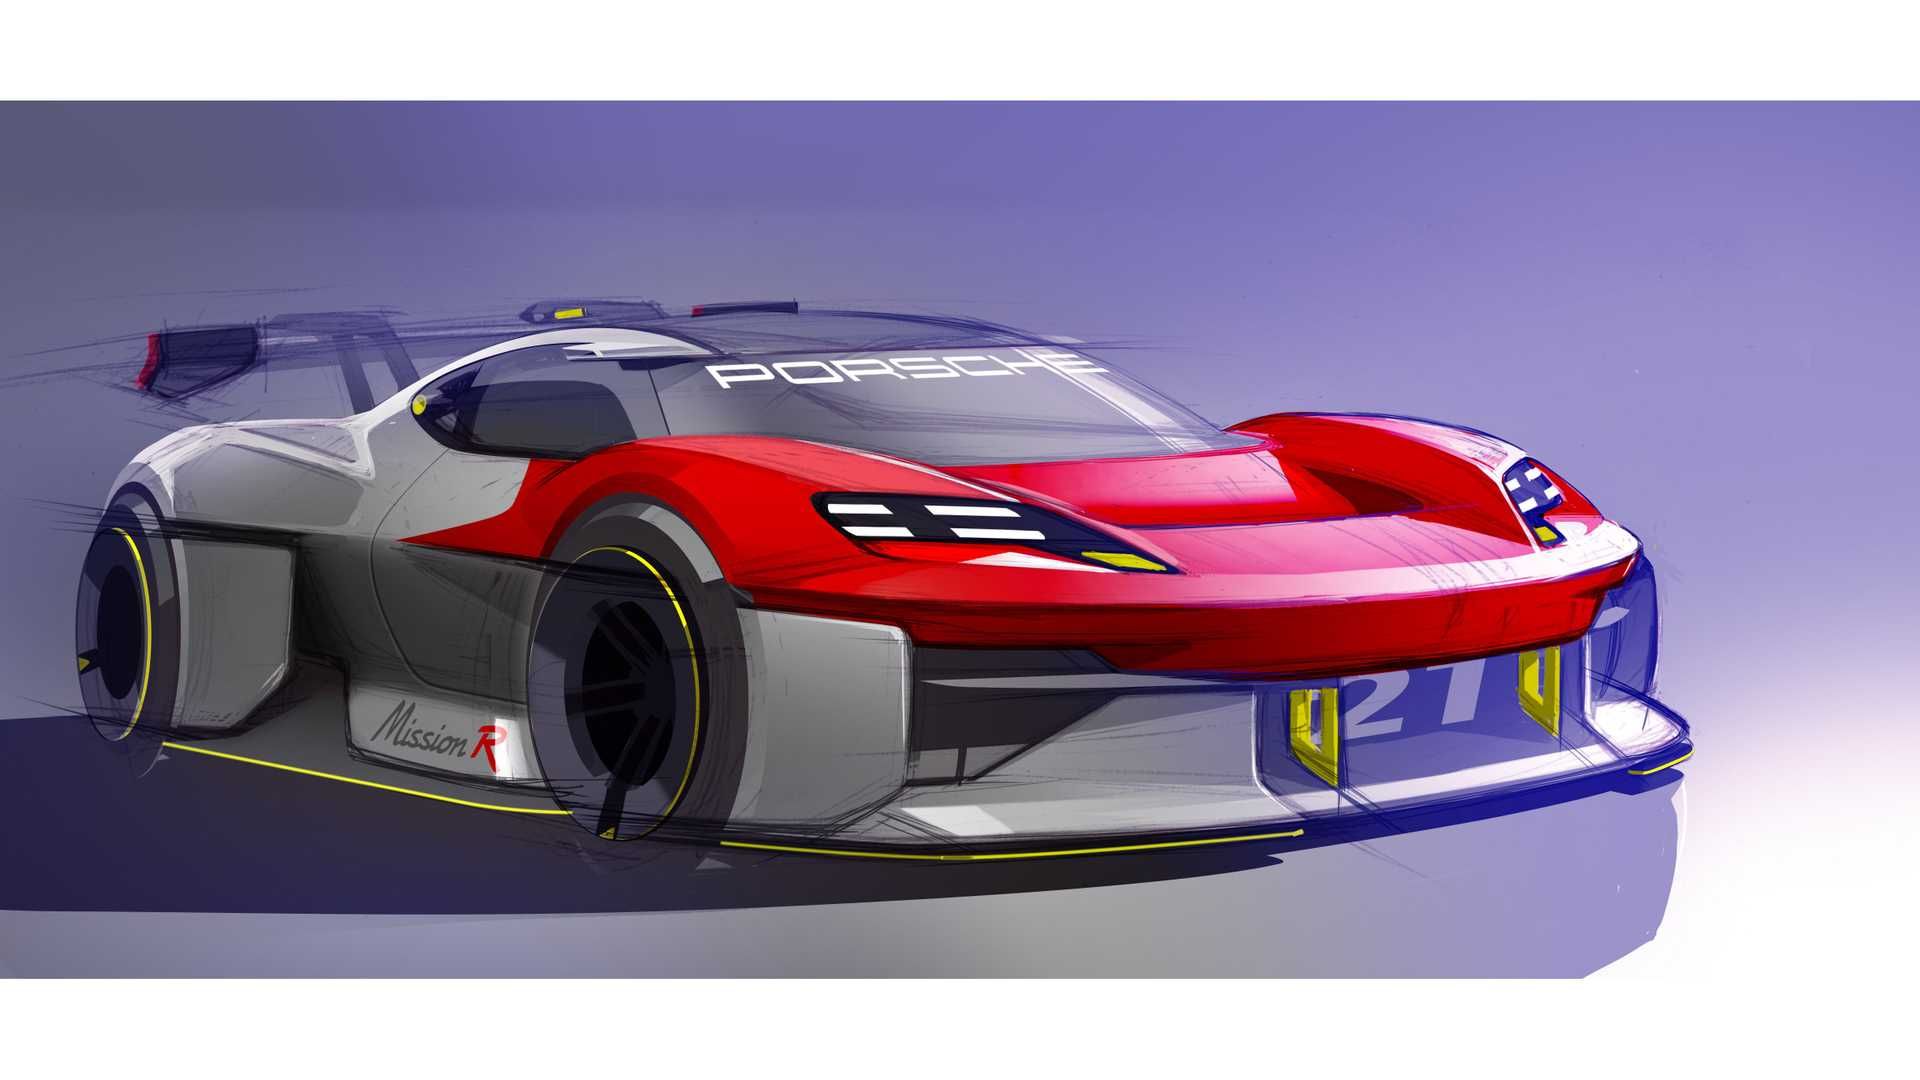 طرح گرافیکی خودروی الکتریکی مفهومی پورشه میشن آر / Porsche Mission R Concept EV